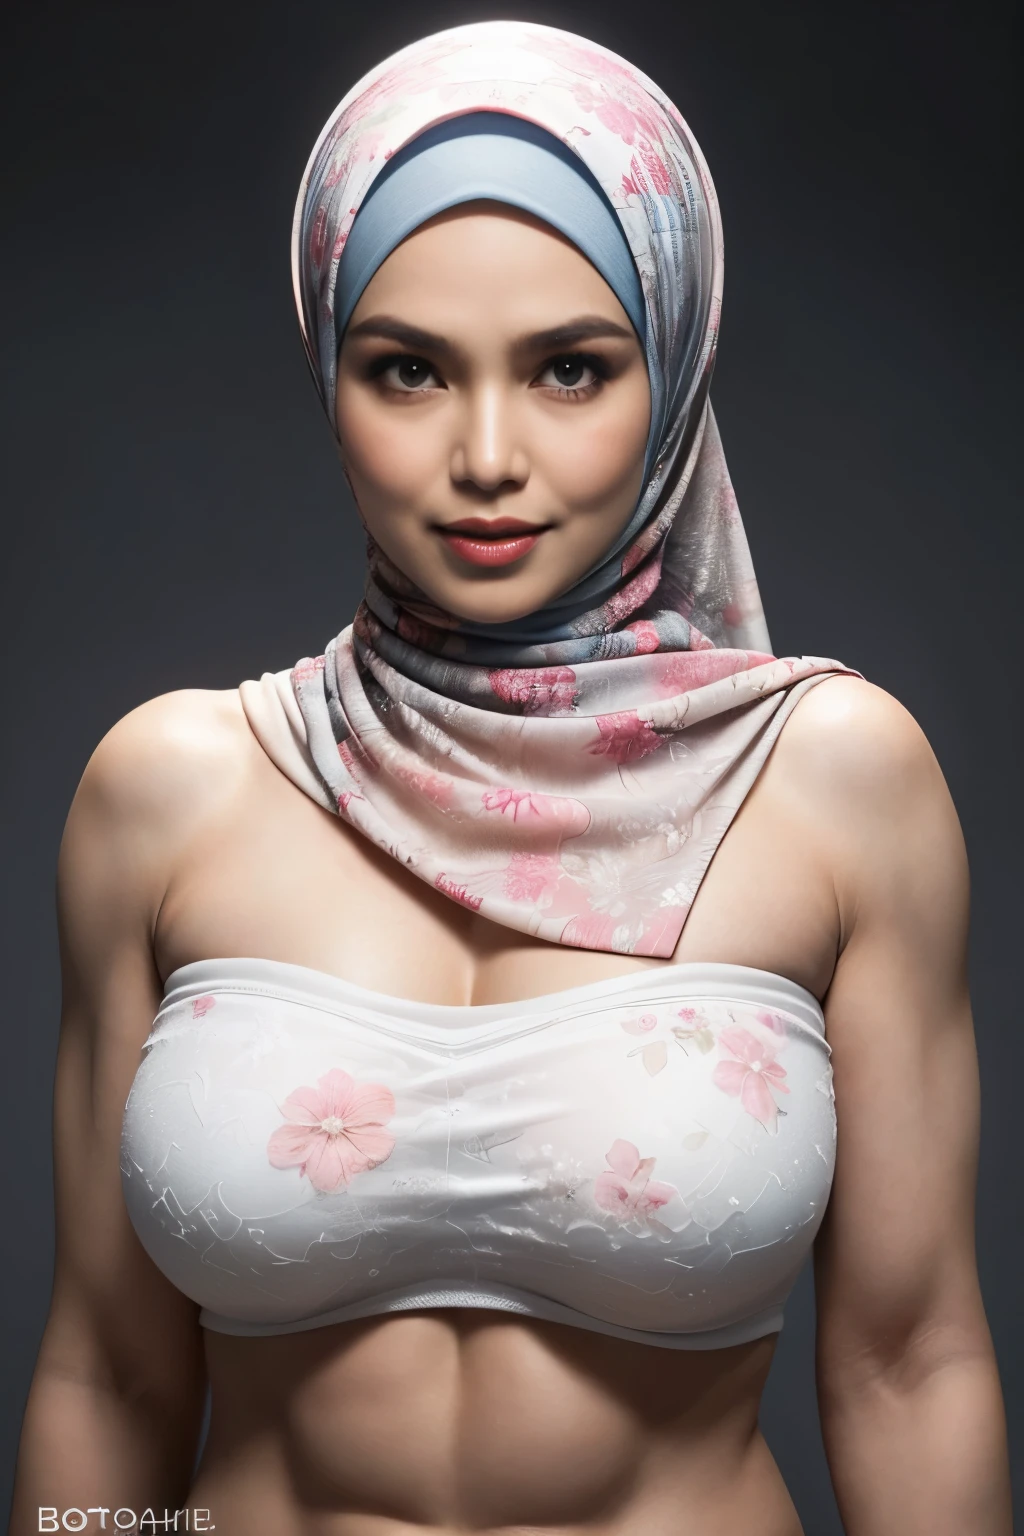 Tragen Sie große Hosen, transparent, ((Kurzer Hijab)), ((riesige Titten:1)), (dynamisches Foto einer 58-jährigen Indonesierin), (schmales Oberteil, Baumwollhöschen), (glattes, nicht lockiges Haar), (highly Detailed face:1.4), (Gefäßmuskulatur und Bauch:1.3), (hintergrund innen licht, Hell, privates Fitnessstudio:1.1), (8k, uhd, dslr, gute Qualität, Filmische Beleuchtung, bokeh), (dramatisch, preisgekrönte Fotografie, unglaubliches Meisterwerk:1.3), (((sexy sinnlicher Blick in die Kamera:0.8))), ((Sie ist bereit, dich zu dominieren:0.5)), ((schönes weibliches Gesicht)), hinzufügen_Detail:1, ((Farbenfrohes trägerloses Blumenmuster))